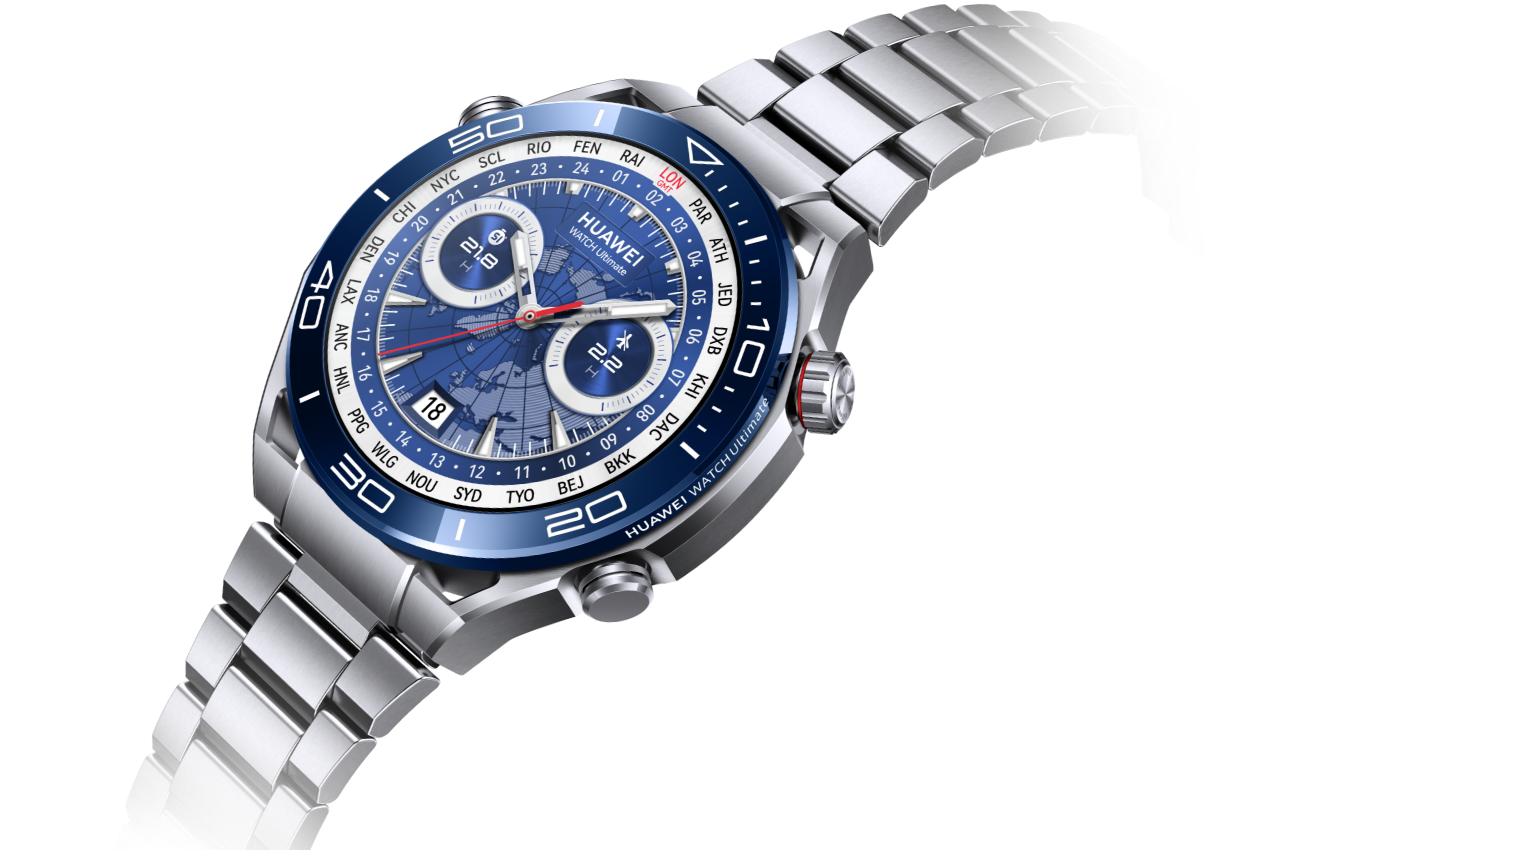 Huawei lanza Watch Ultimate, su reloj más revolucionario y lujoso